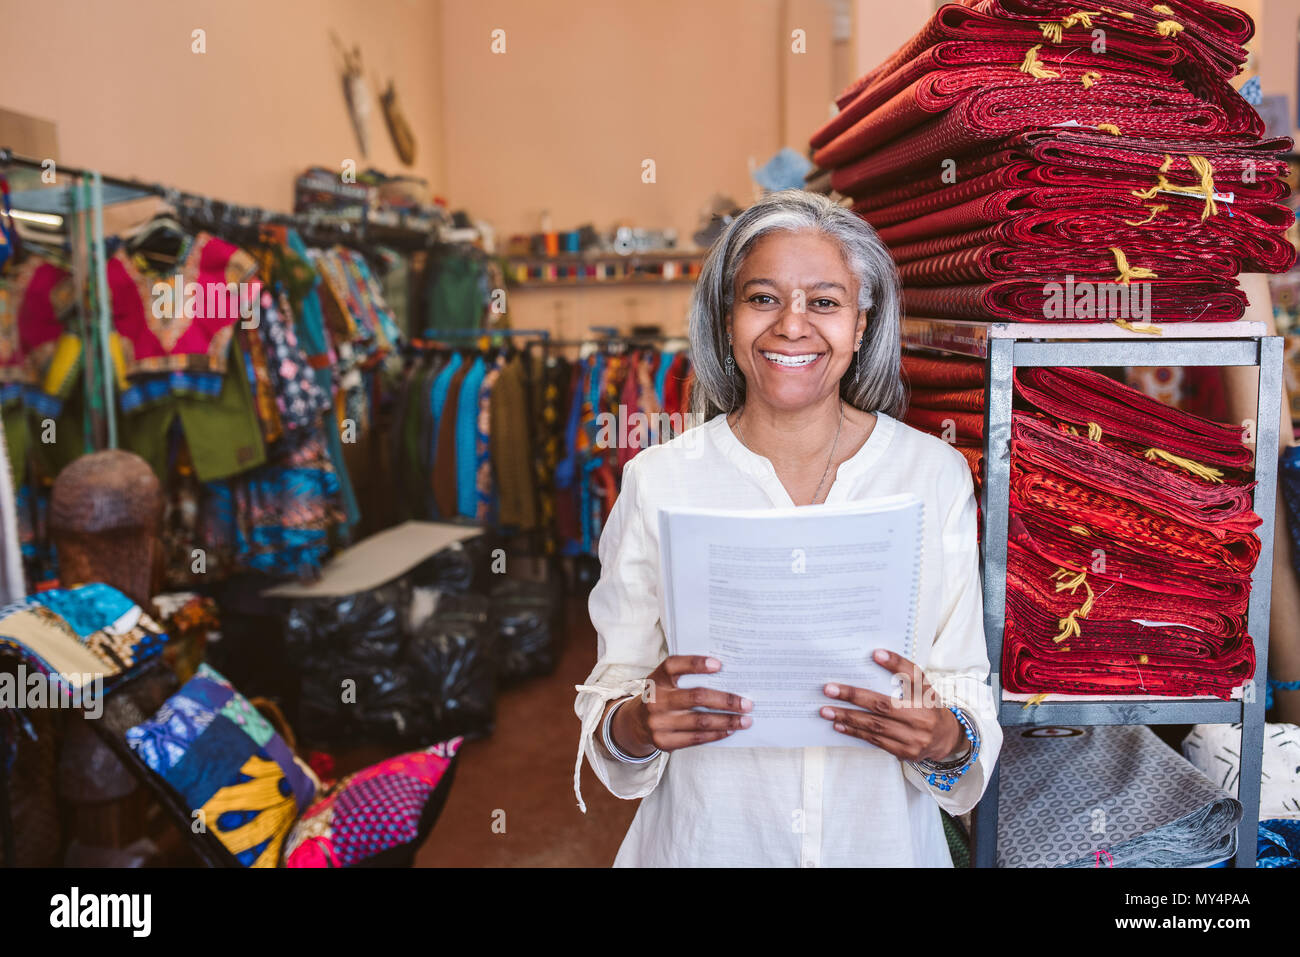 Porträt eines lächelnden reife Stoff shop besitzer lesen Papierkram beim Stehen neben Regale voll von bunten Tüchern und Textilien Stockfoto